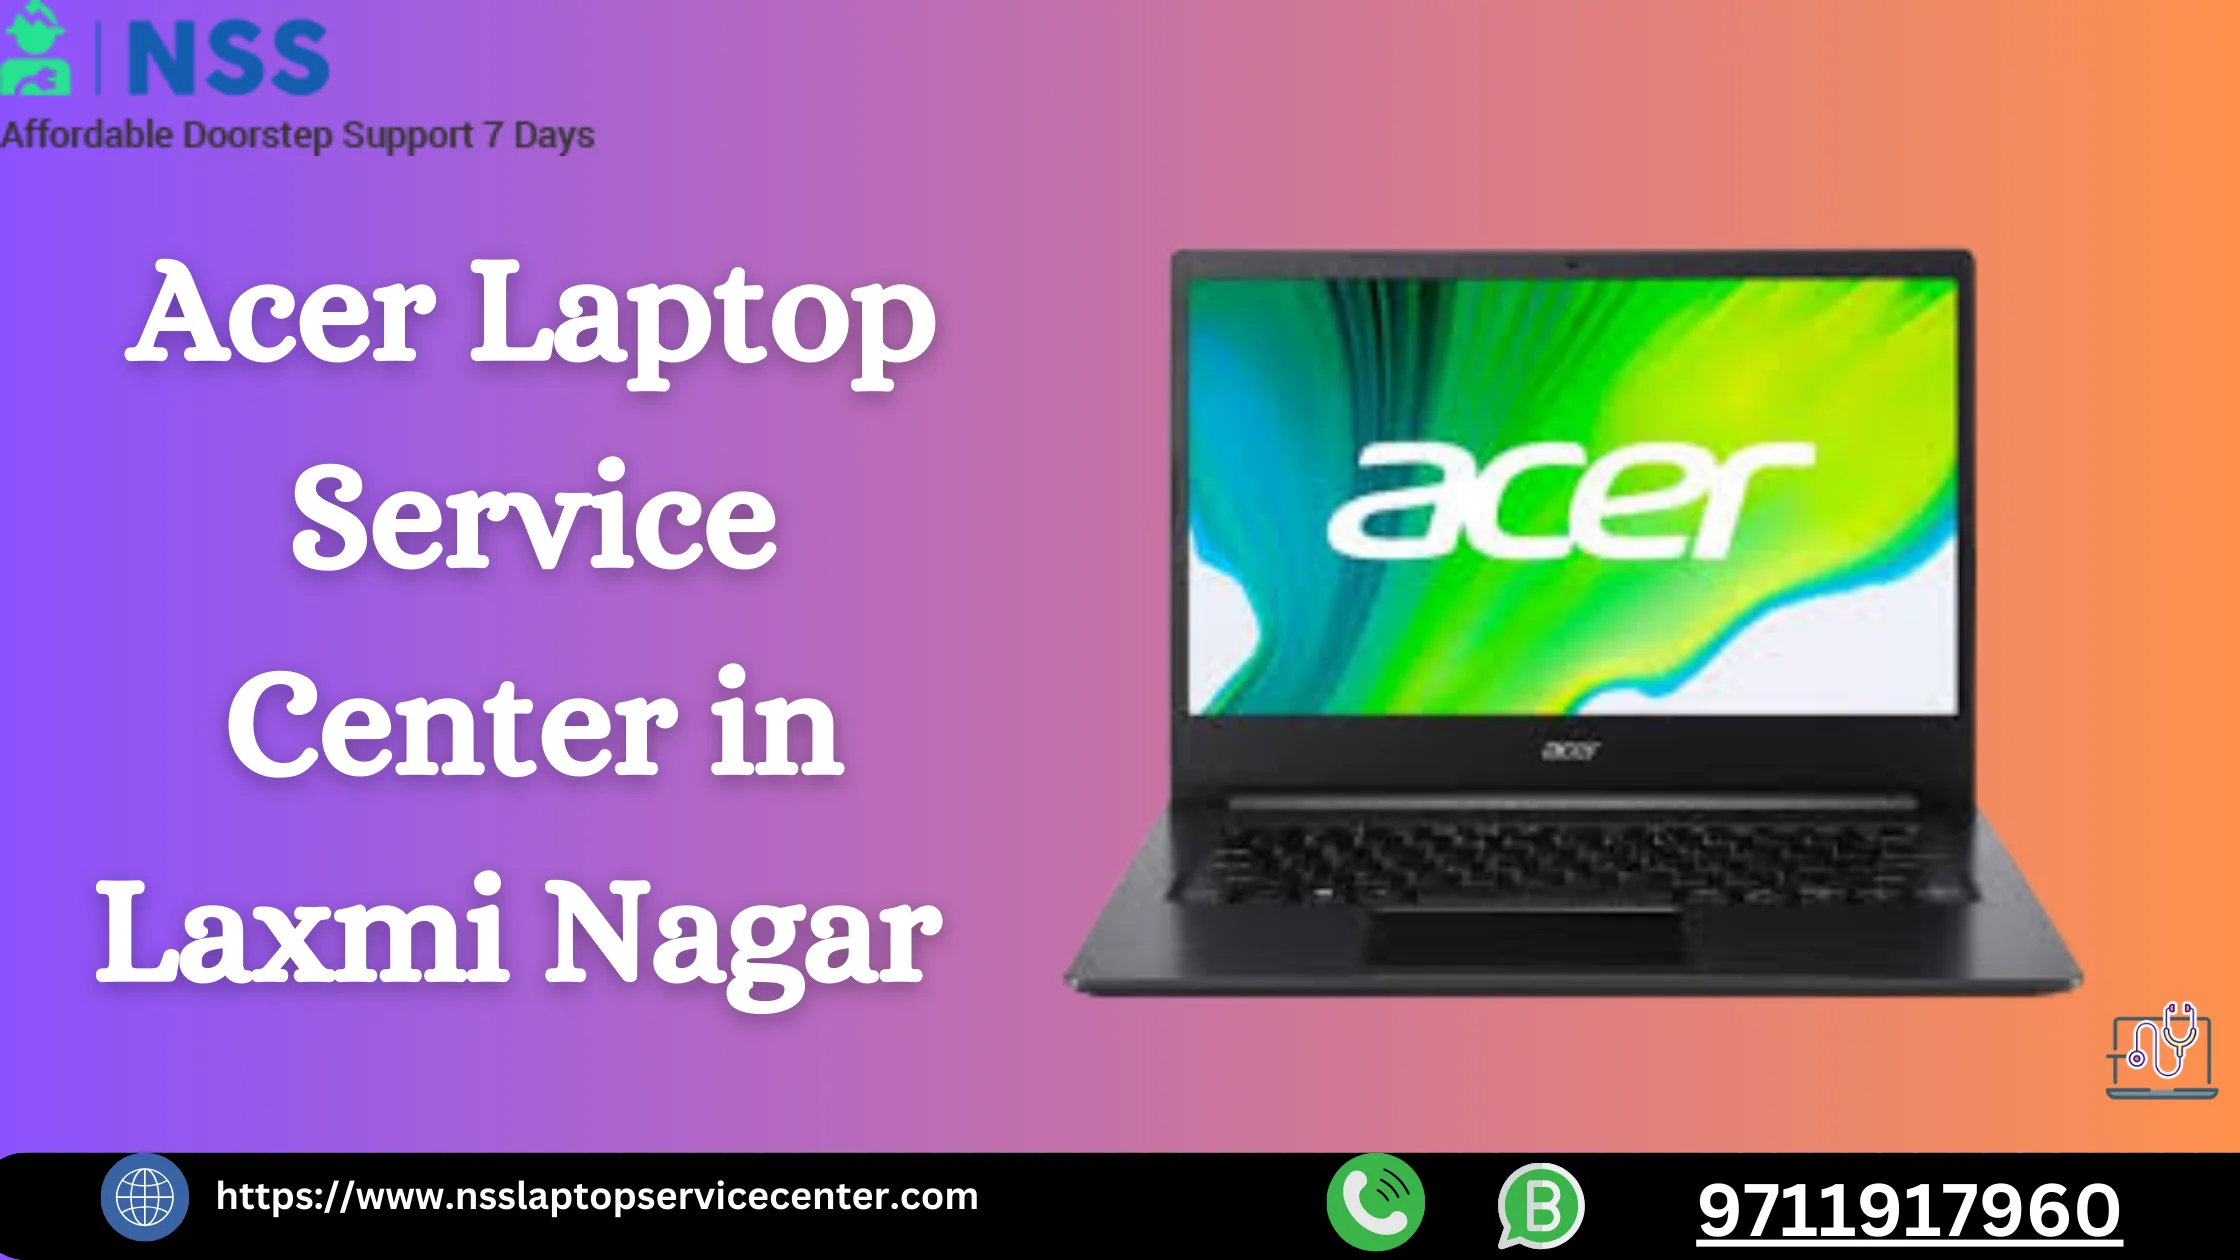 Acer Laptop Service Center in Laxmi Nagar Near Delhi